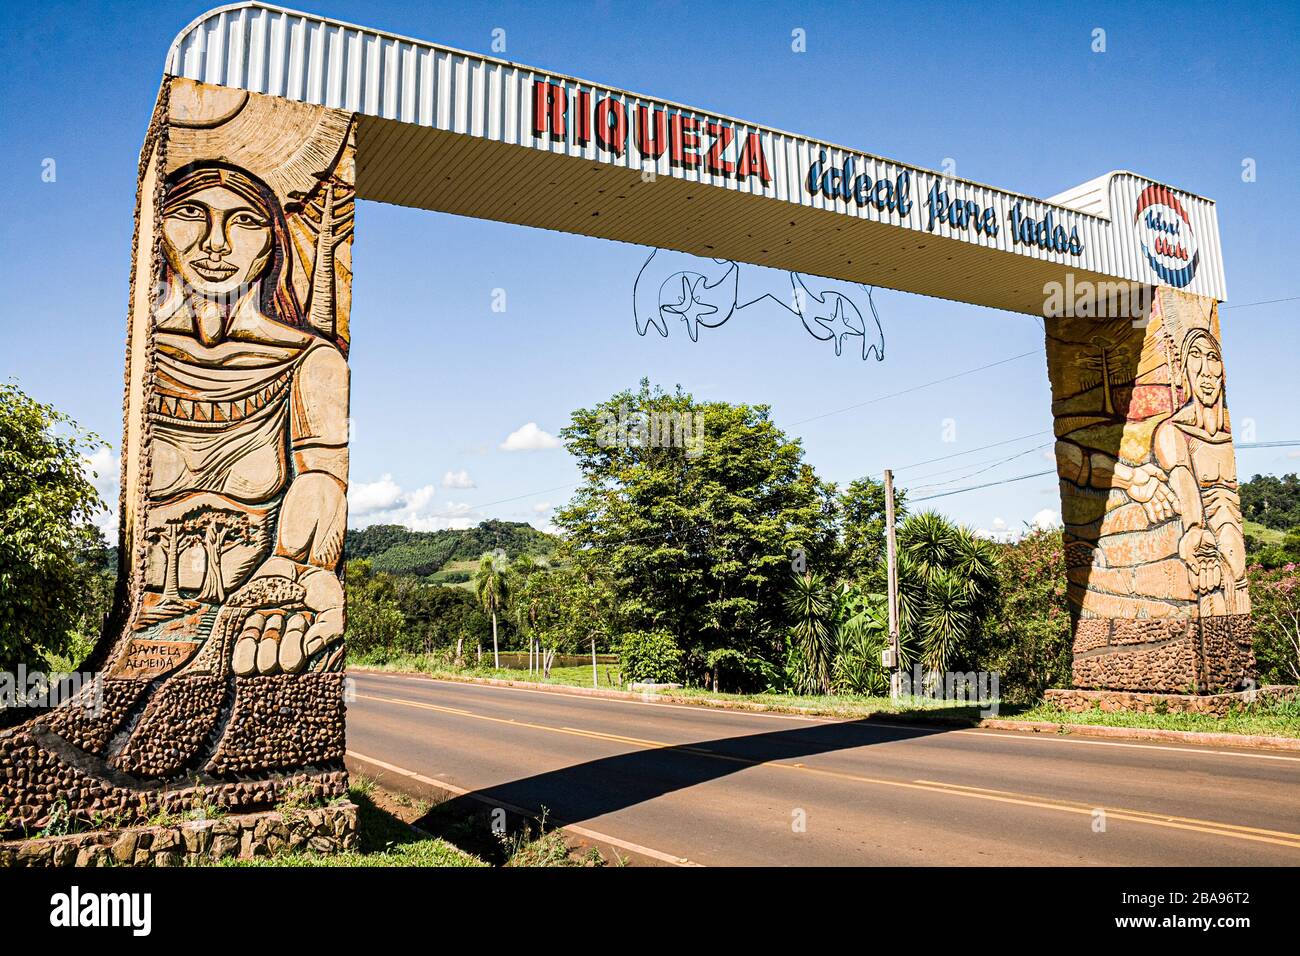 Porte d'entrée de la ville. Riqueza, Santa Catarina, Brésil. Banque D'Images